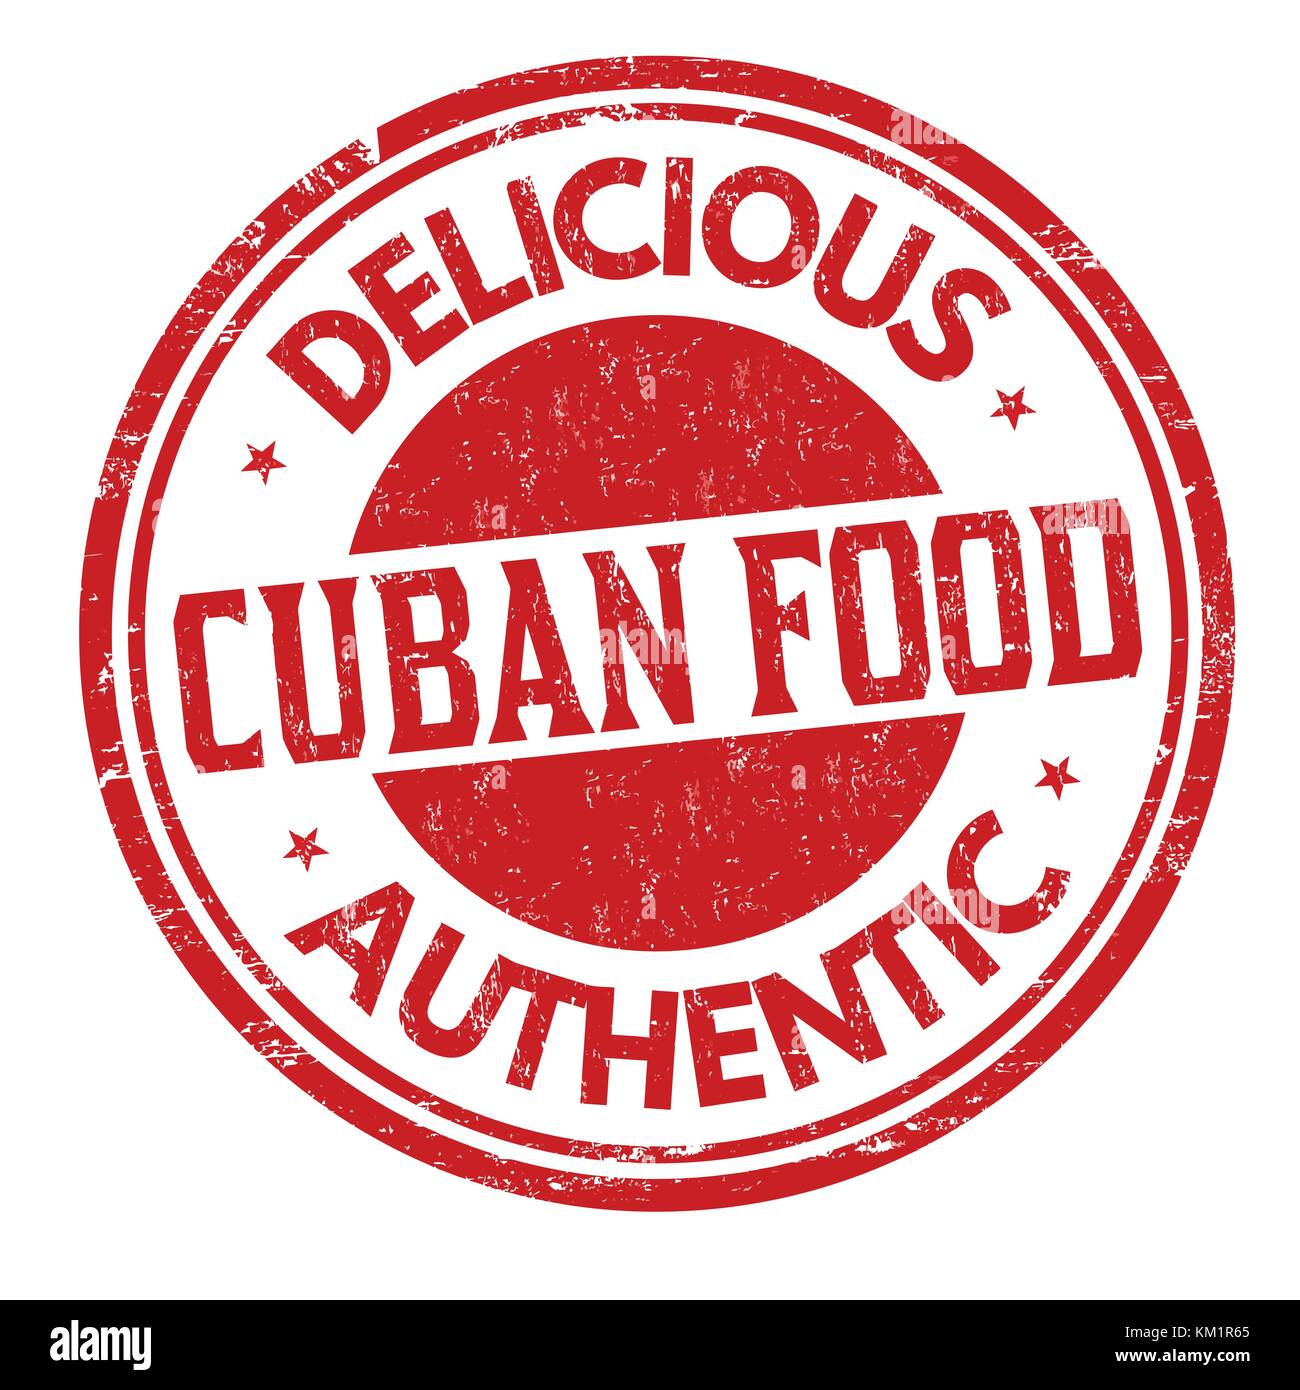 Kubanische Küche grunge Stempelabdruck auf weißem Hintergrund, Vector Illustration Stock Vektor